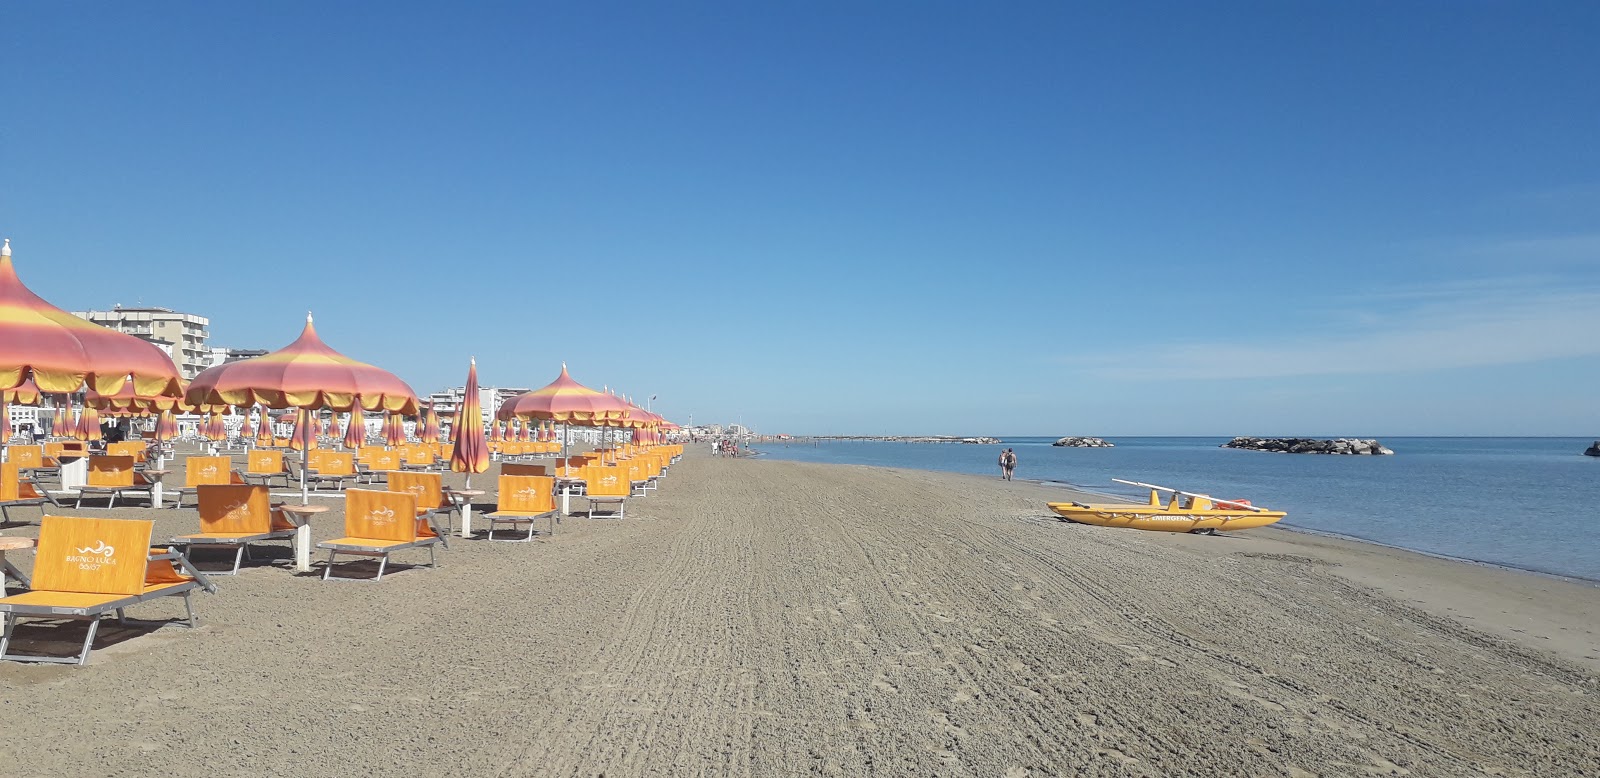 Torre pedrera beach'in fotoğrafı parlak ince kum yüzey ile